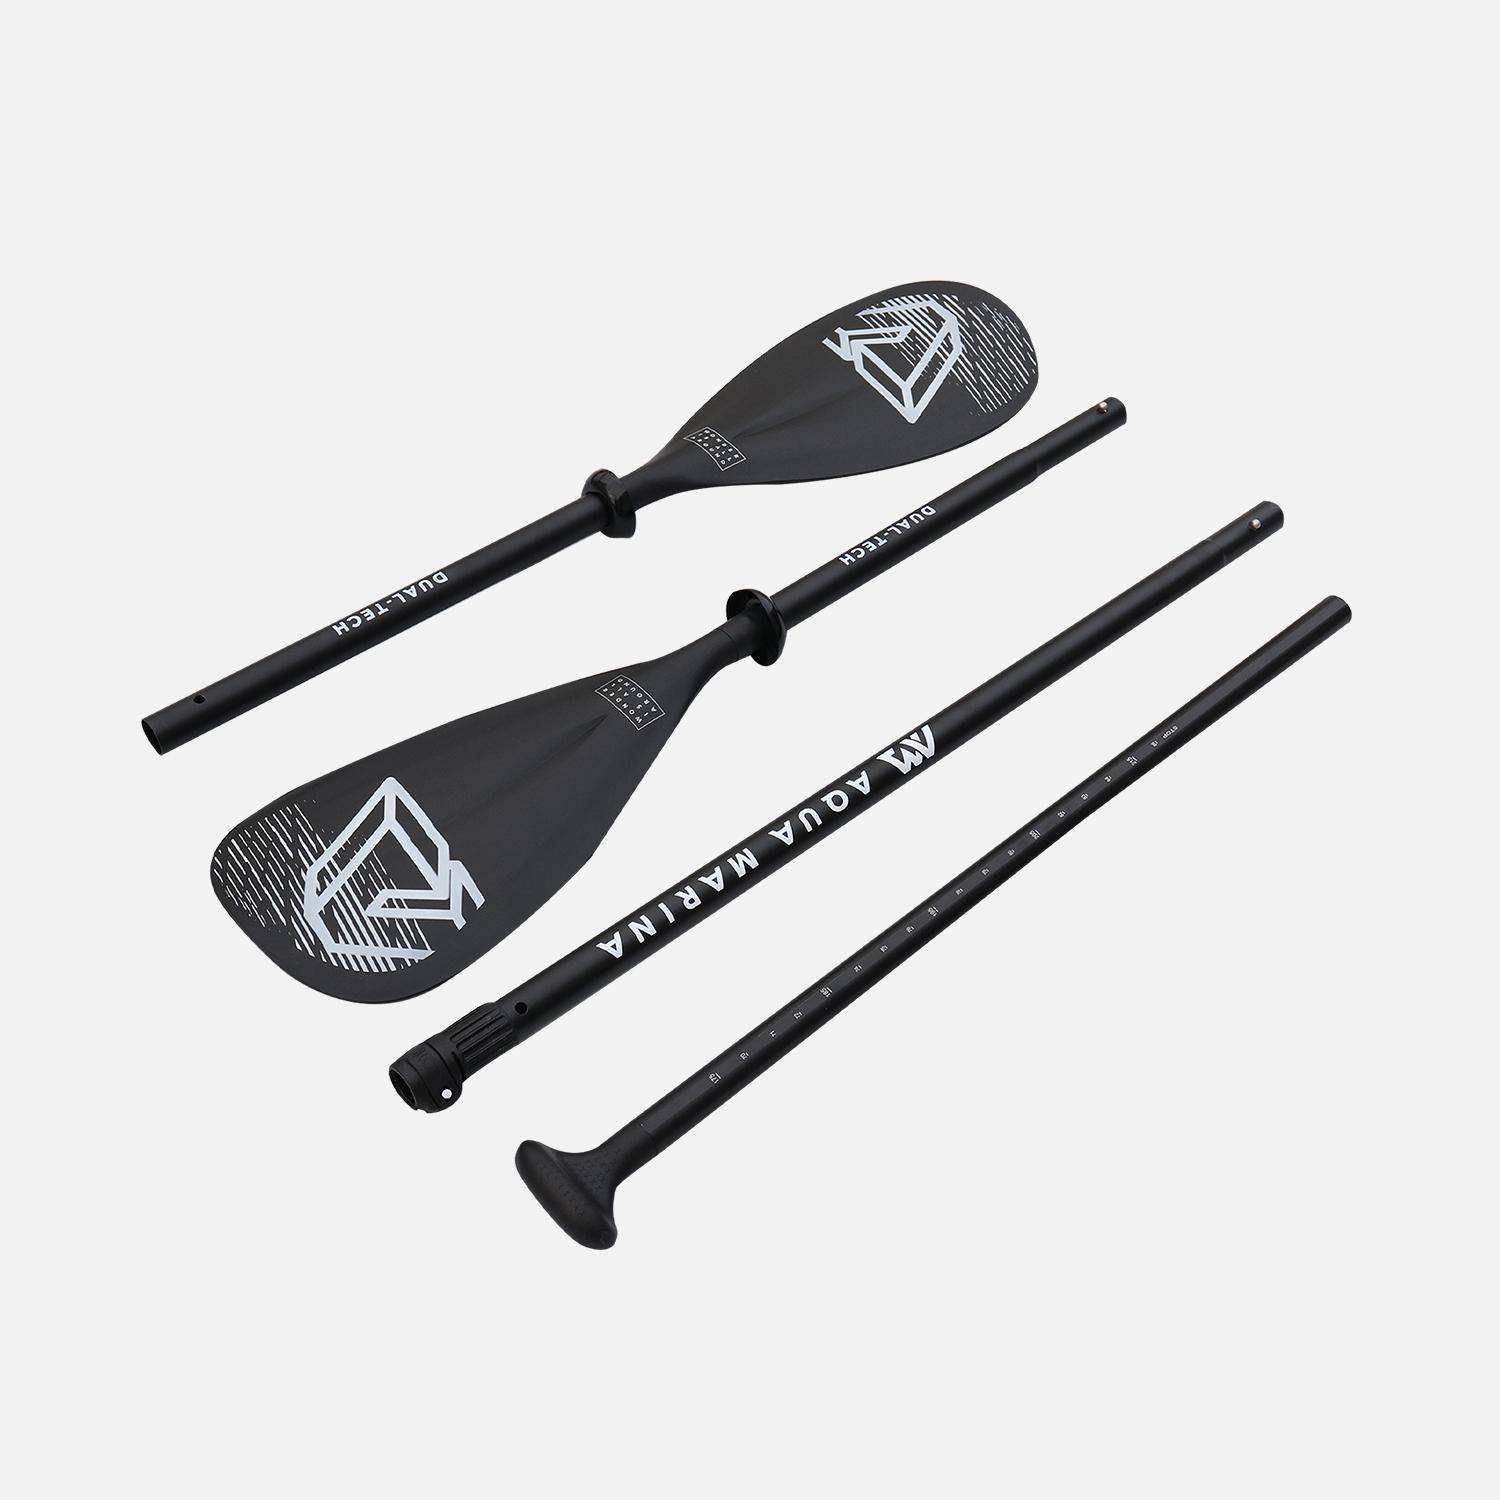 Pagaie 2 en 1 aluminium, démontable et réglable, pour stand up paddle (SUP) et kayak Photo2